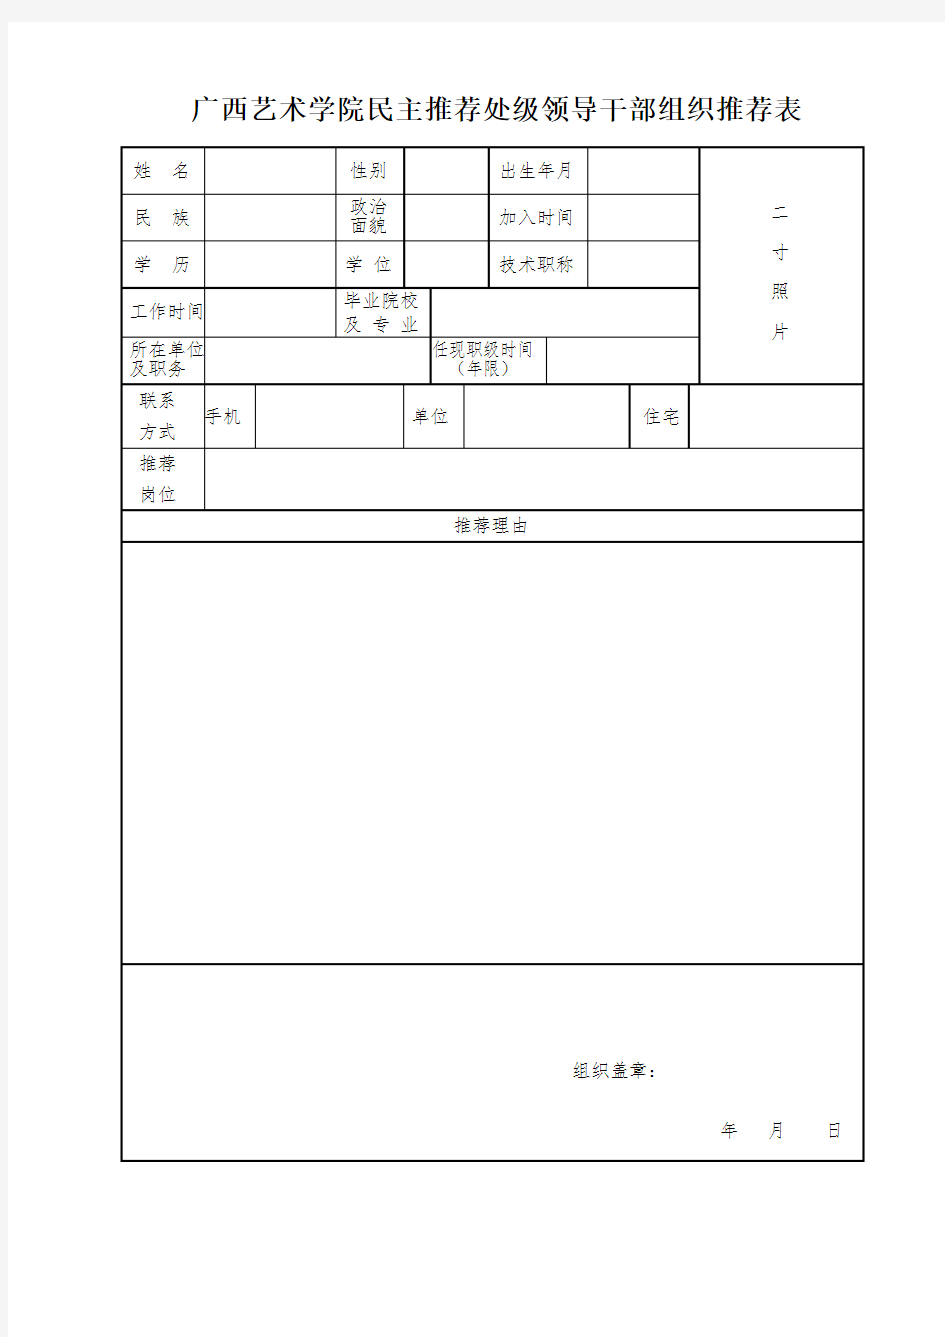 广西艺术学院民主推荐处级领导干部组织推荐表